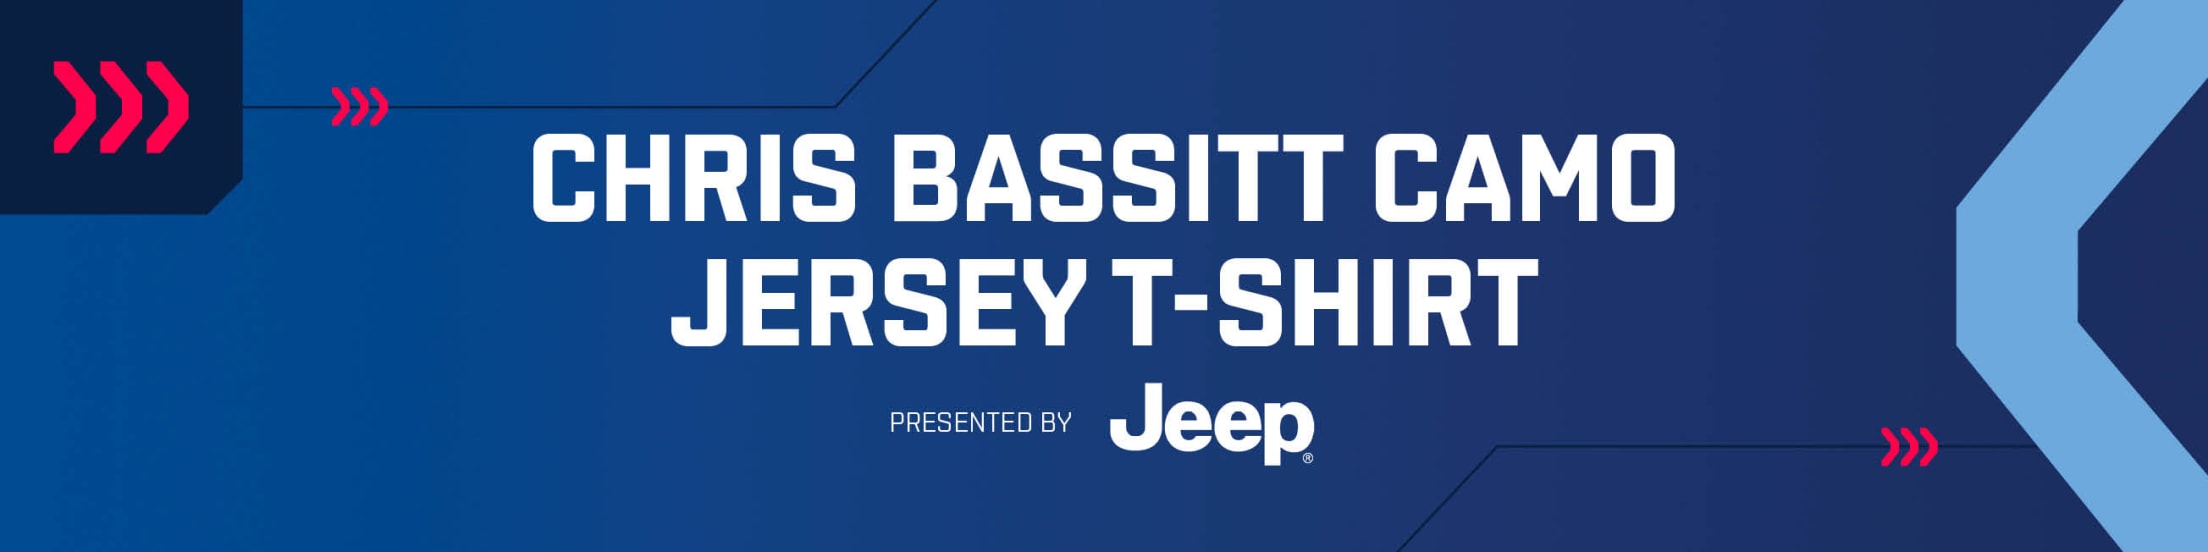 Chris Bassitt Camo Jersey T-Shirt presented by Jeep